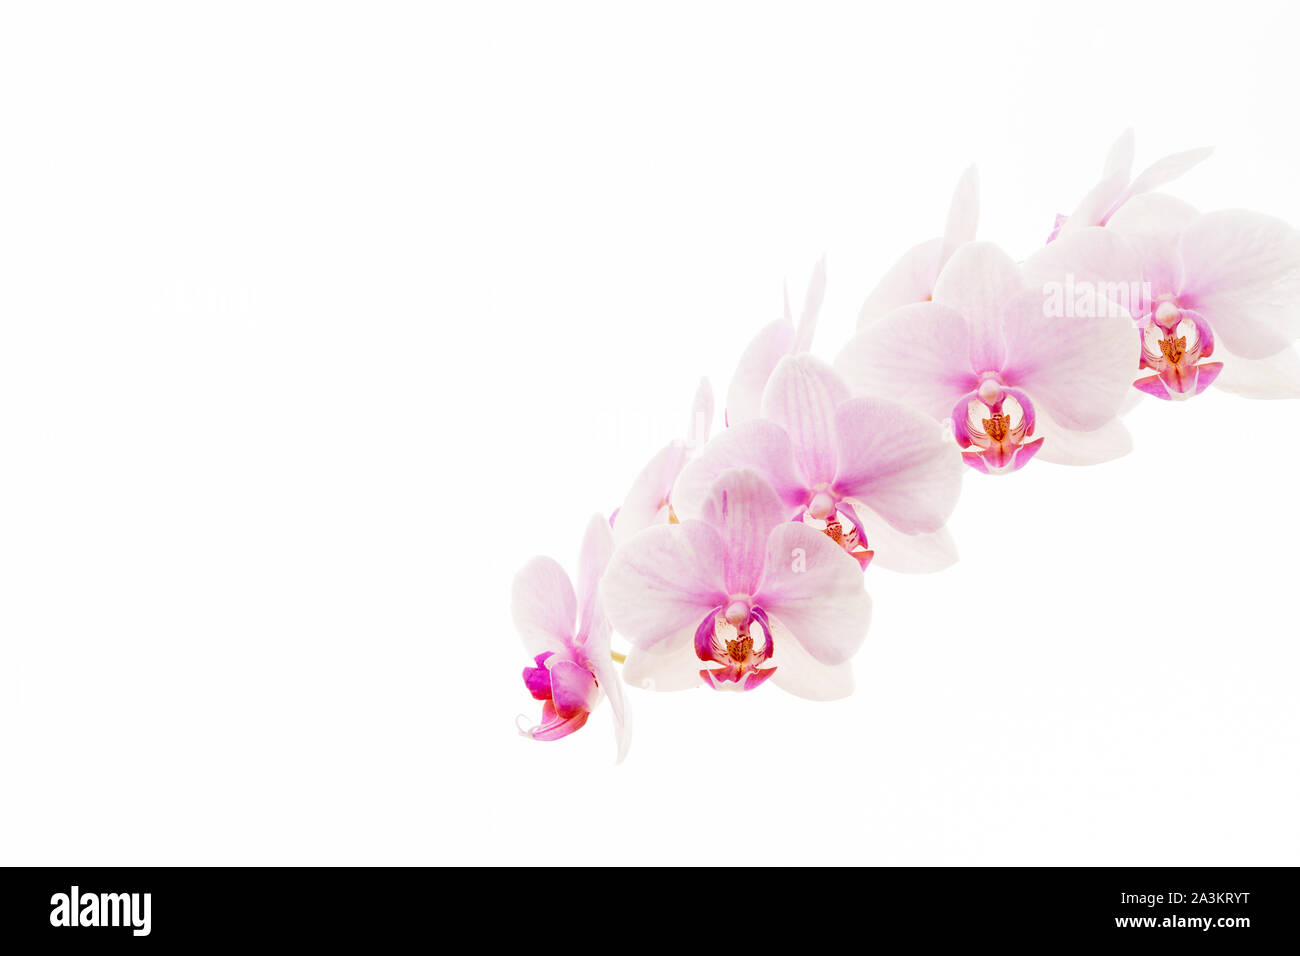 Orchidée Phalaenopsis rose pâle communément appelée orchidée de la moth, isolée sur fond blanc. Banque D'Images